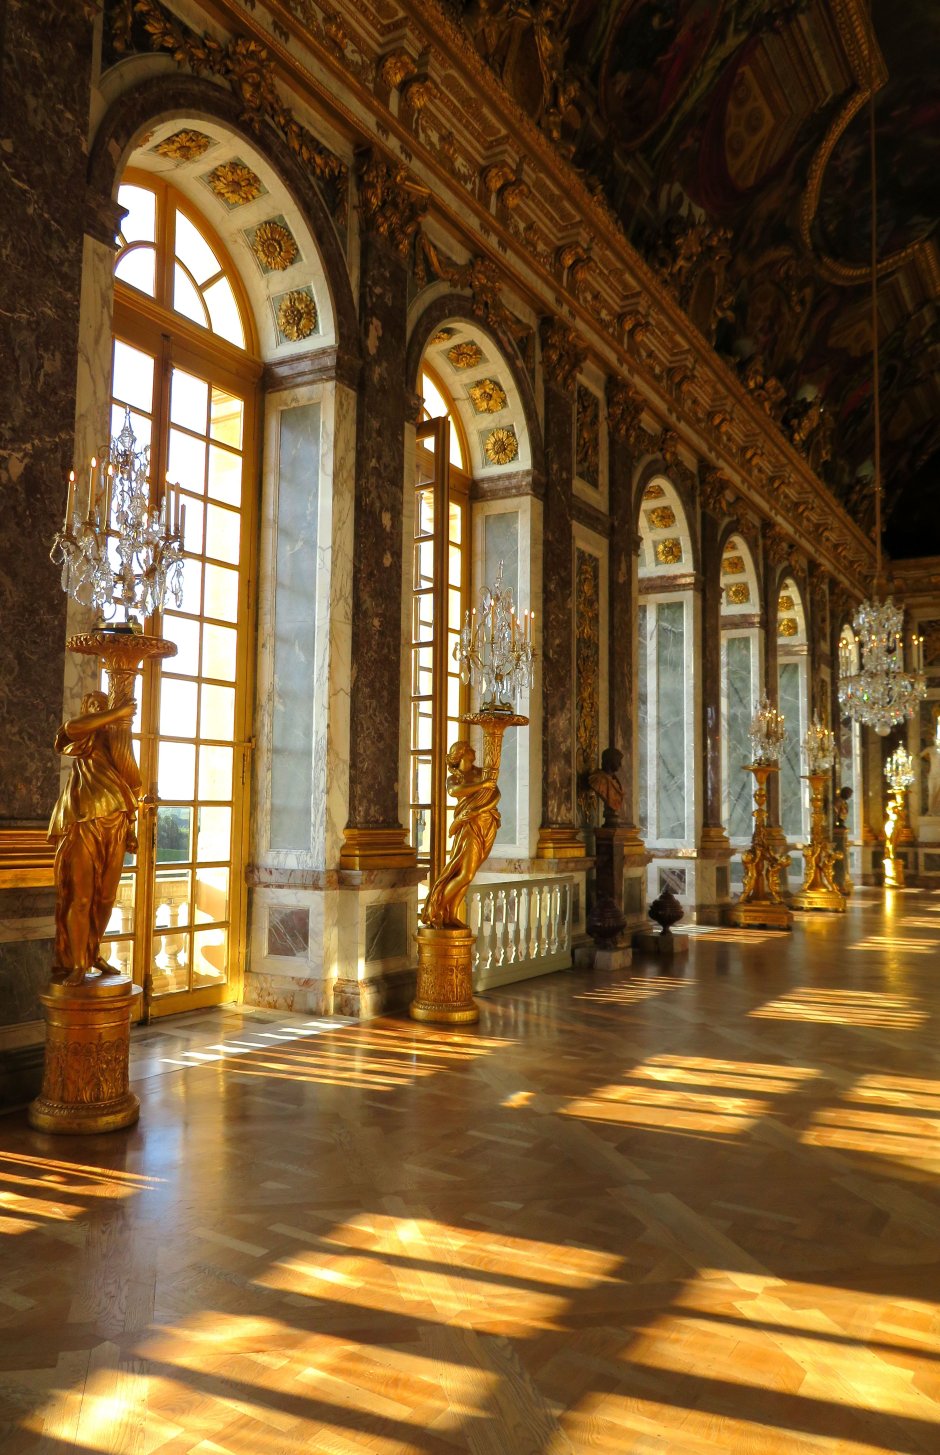 Версальский дворец спальня королевы